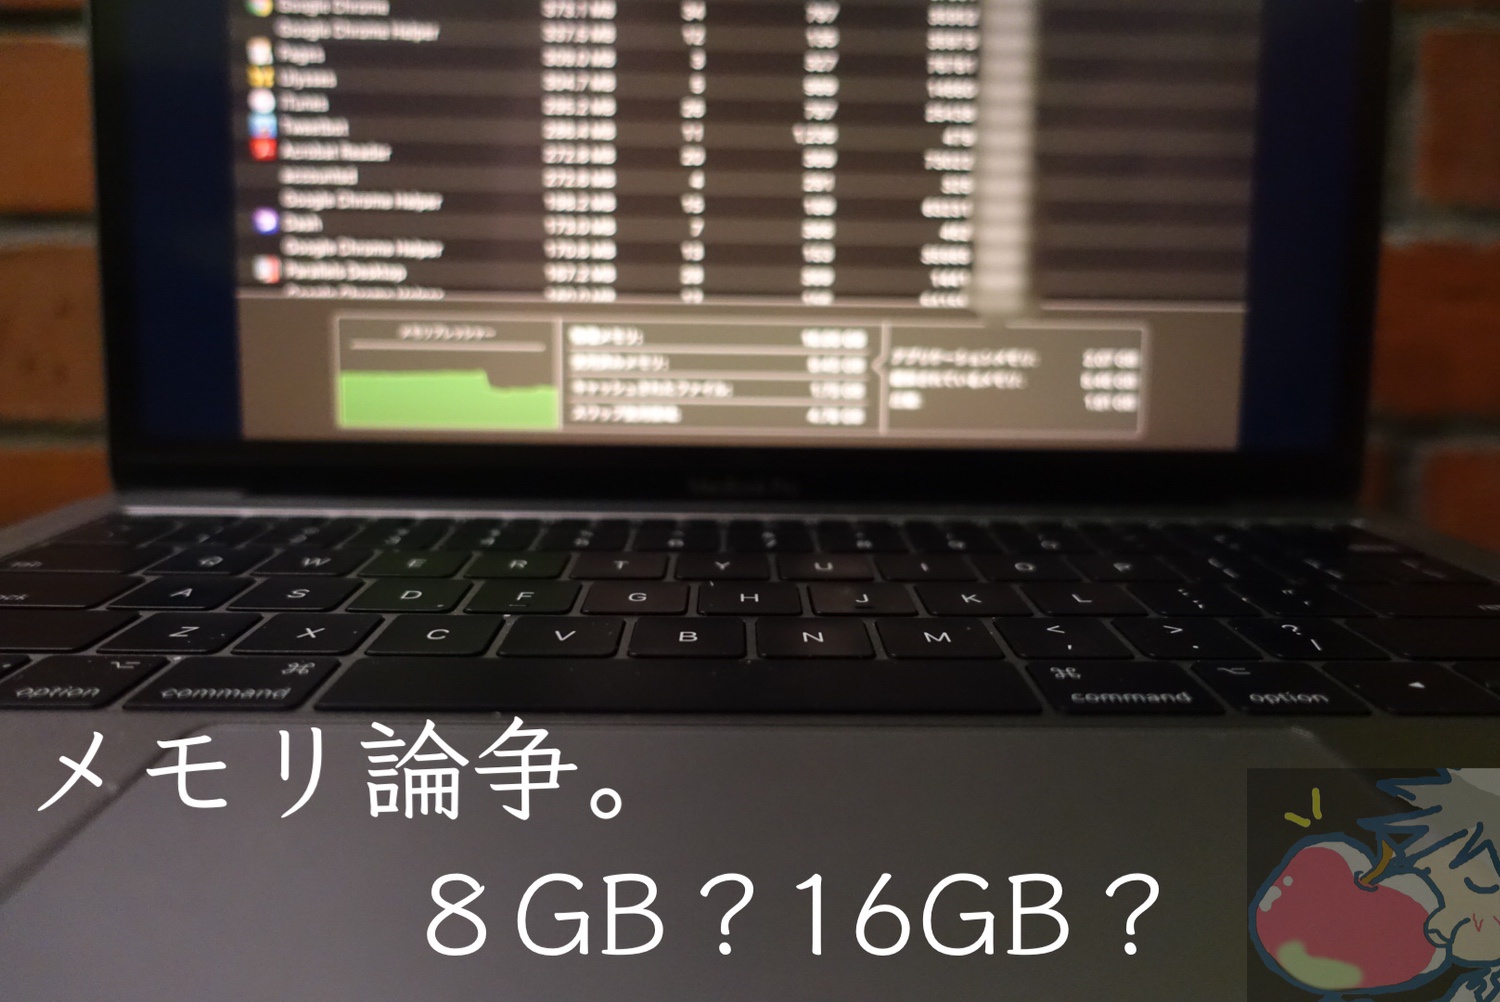 【Mac】カスタマイズすべき？メモリ8GB VS 16GB？577名へアンケート取ってみた